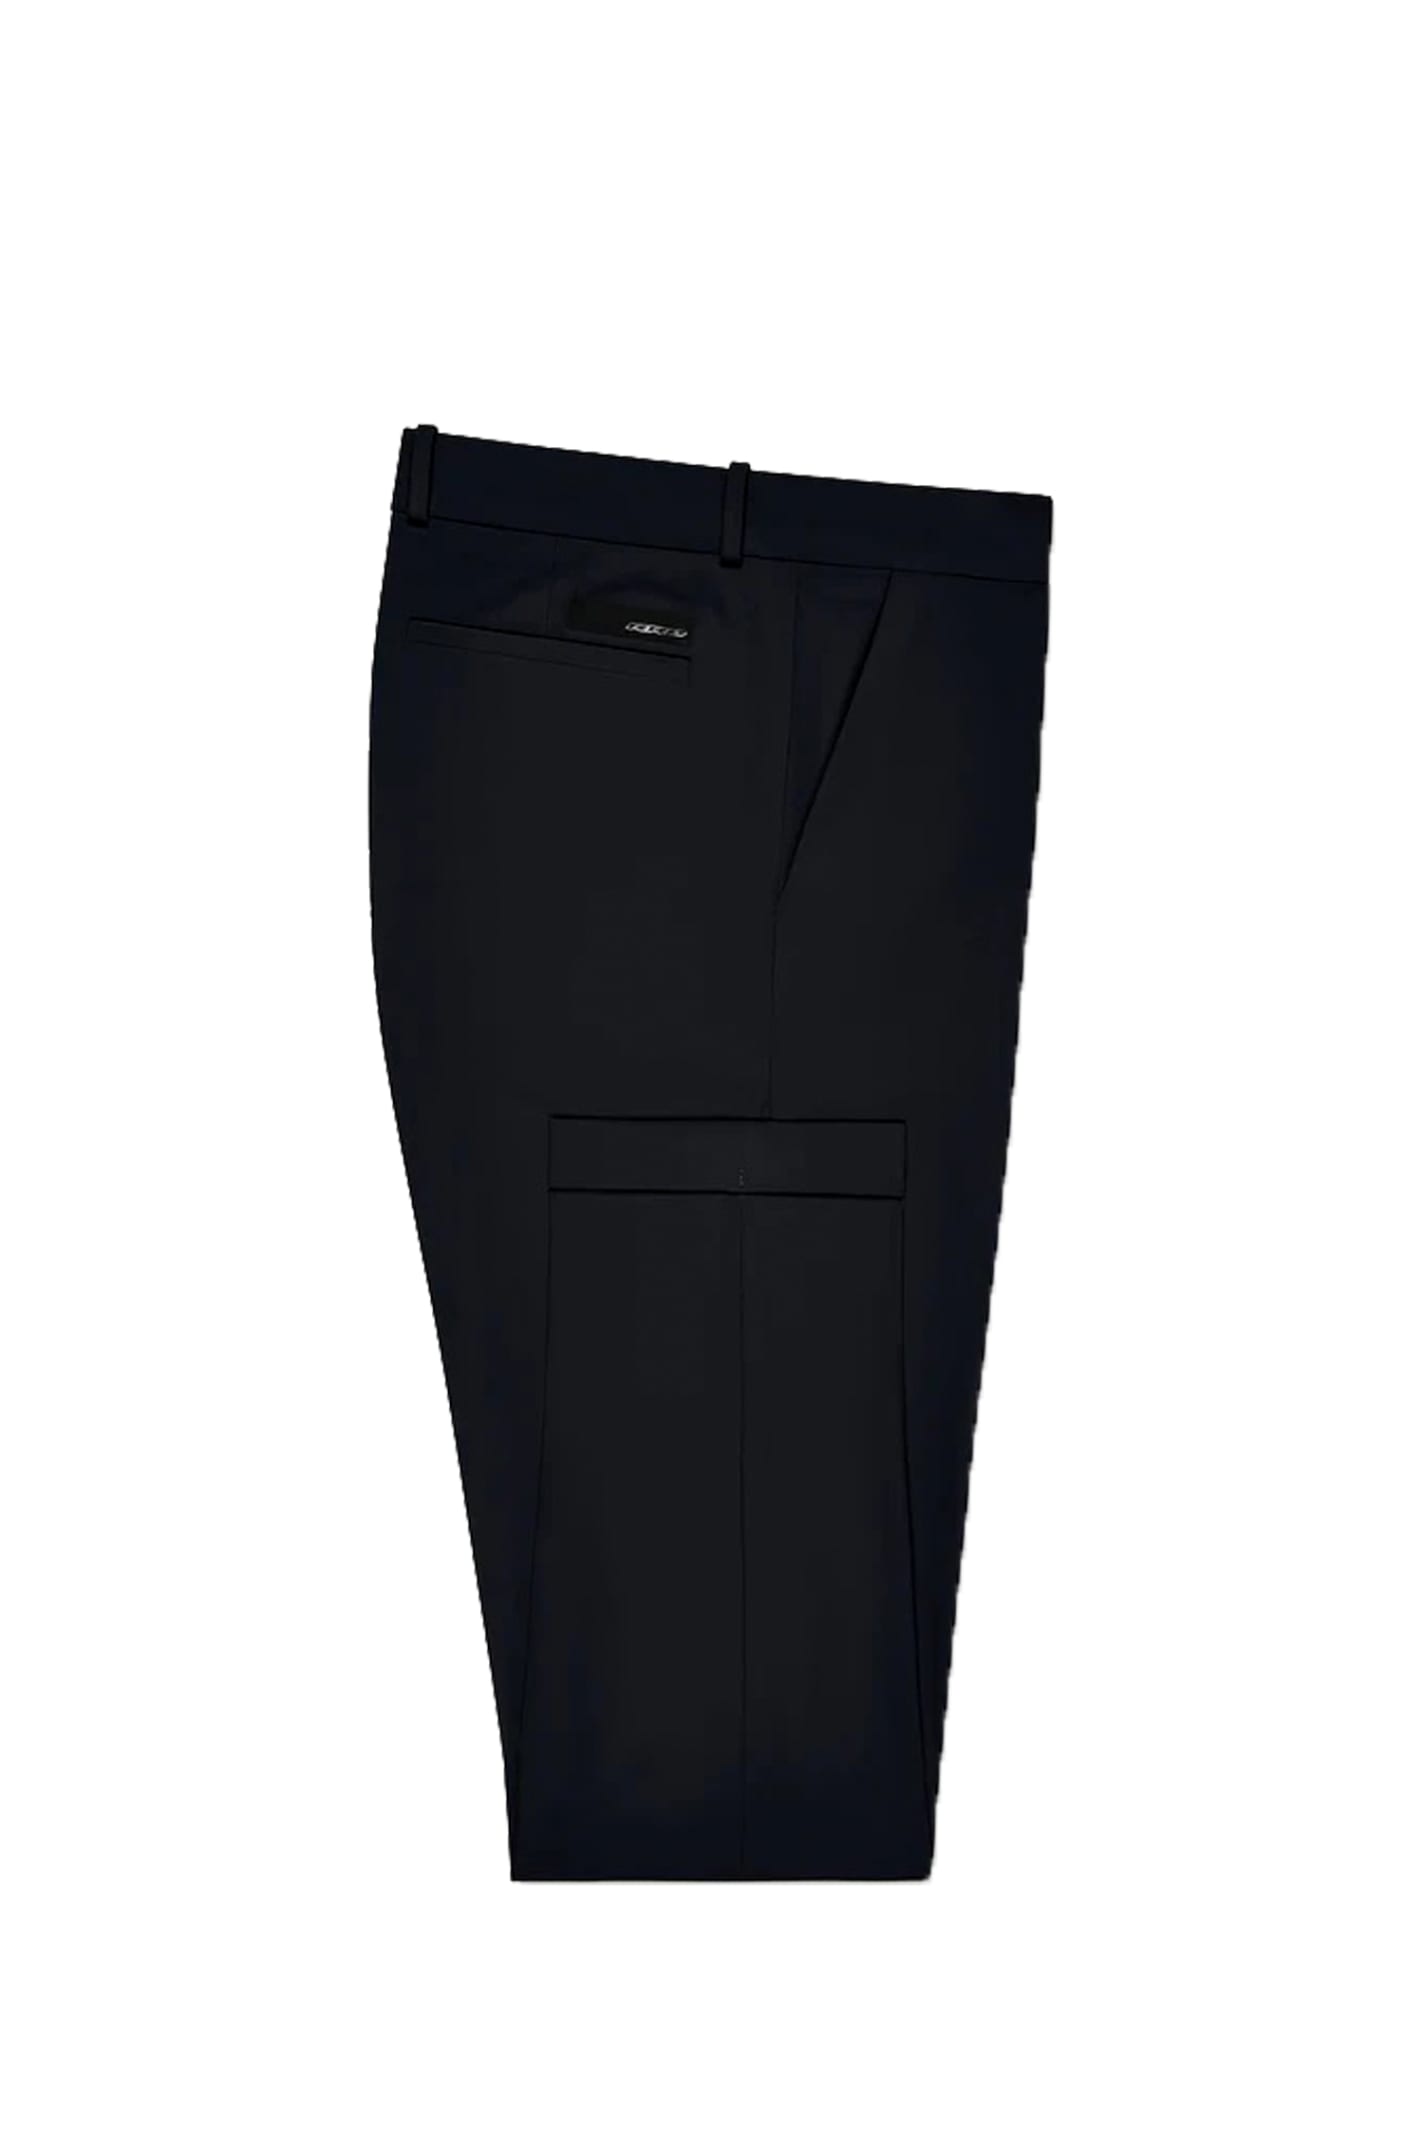 Shop Rrd - Roberto Ricci Design Pants